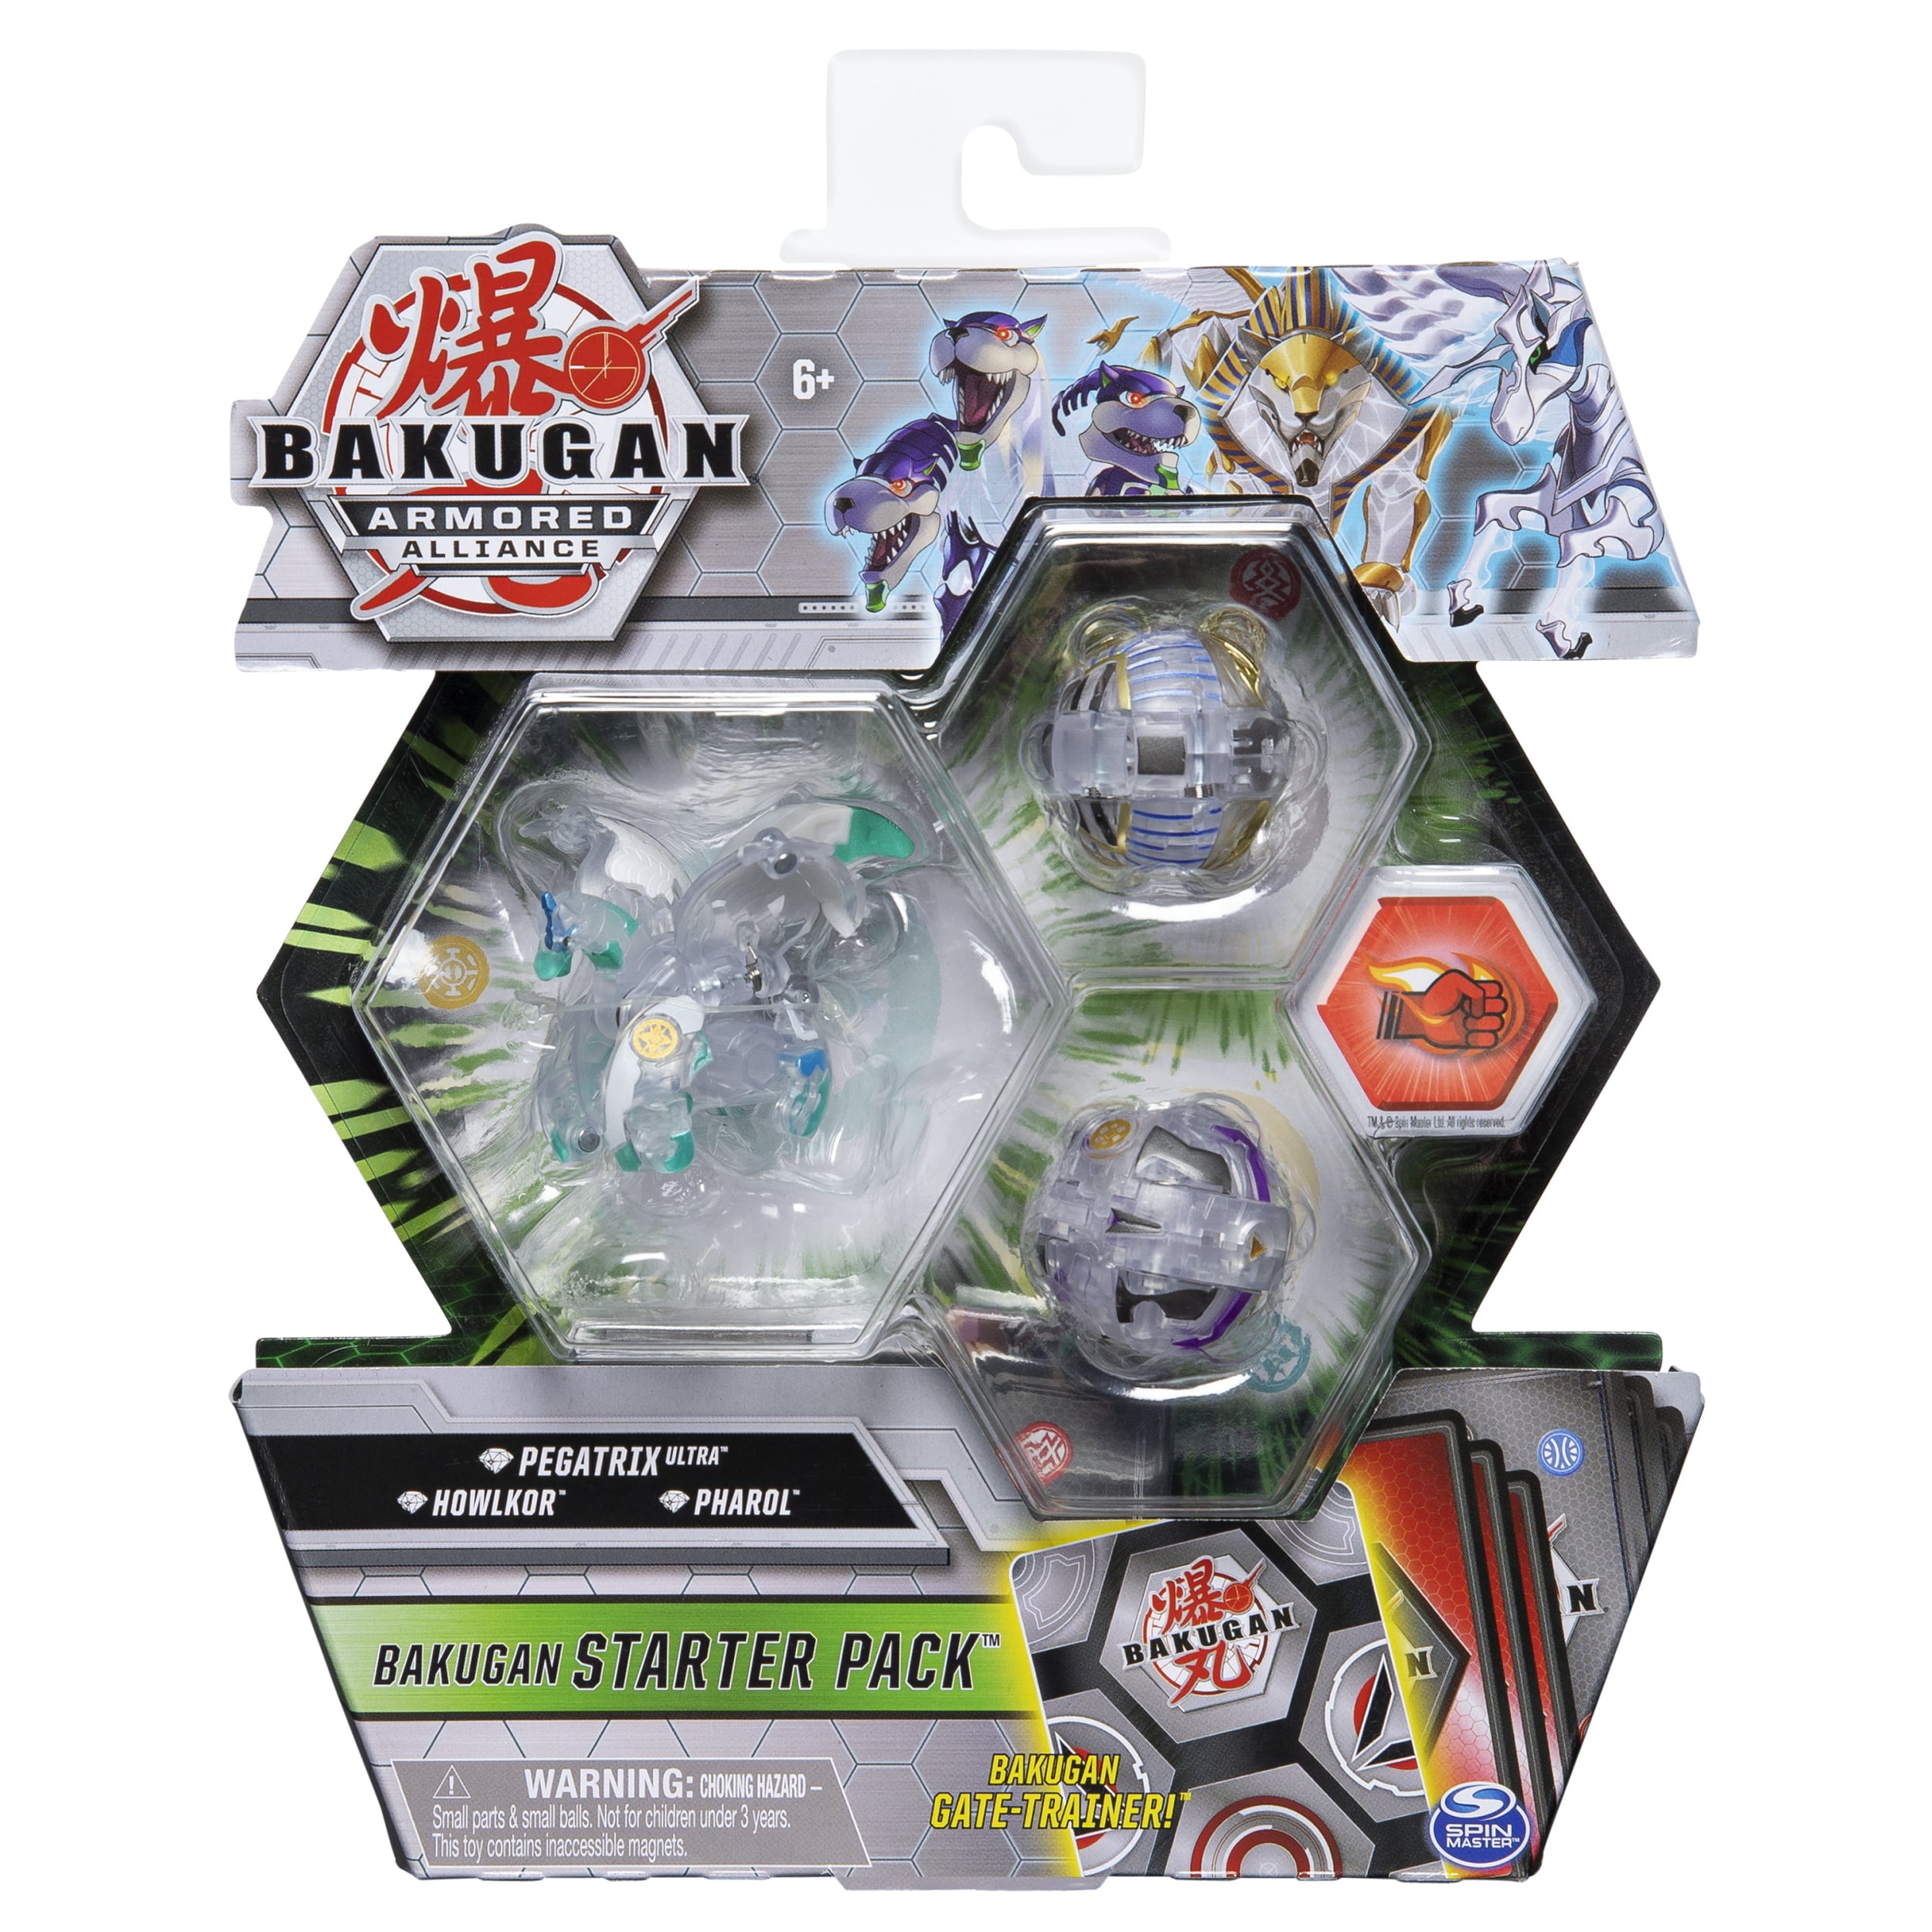 Bakugan Armored Alliance Starter Pack Diamond Pegatrix Howlkor PHAROL Spin for sale online